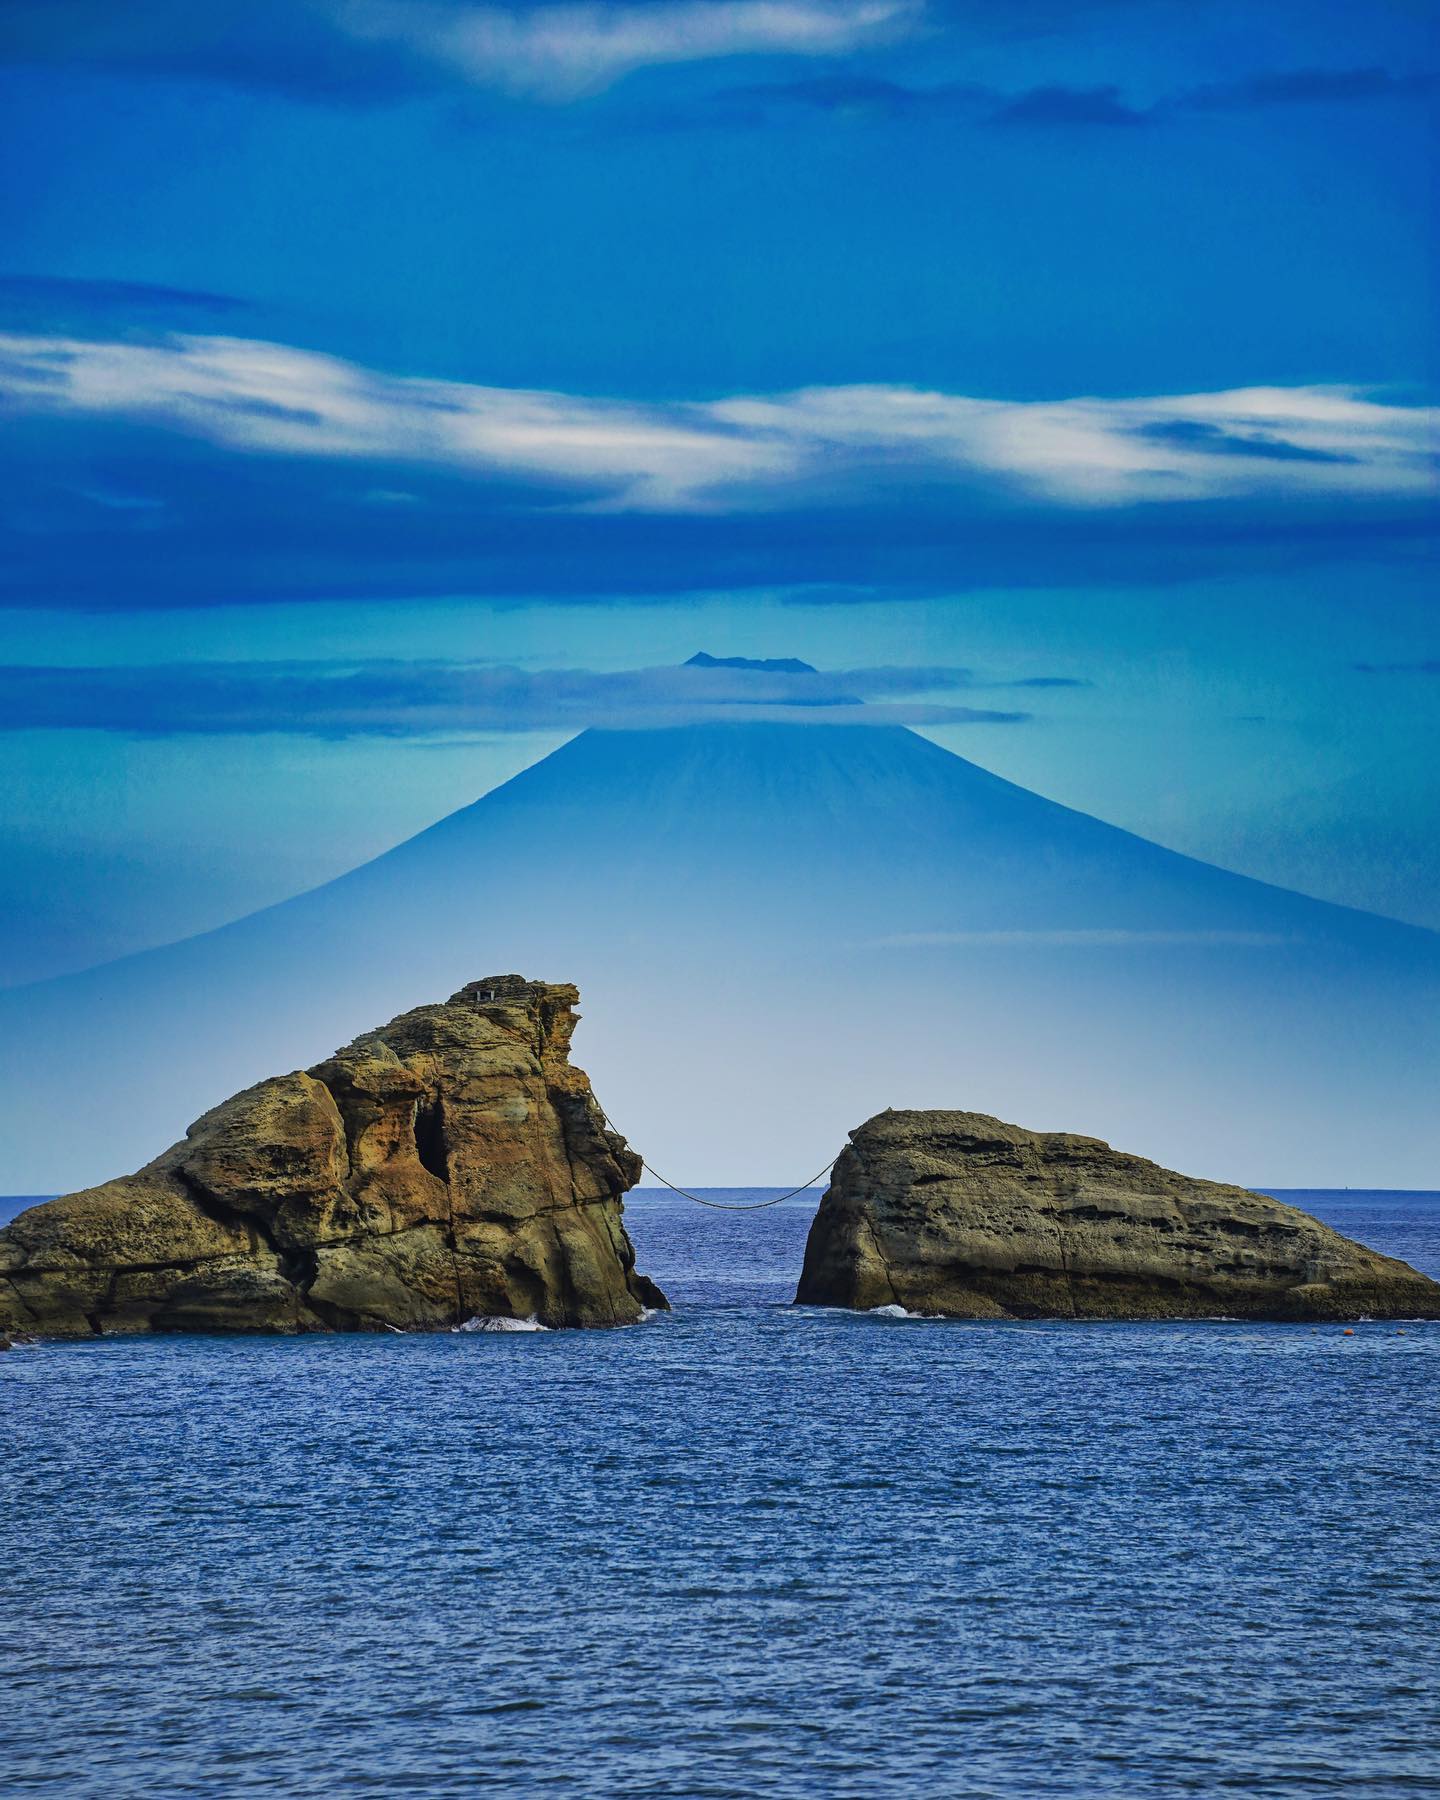 🇯🇵【伊豆半島】雲見岬
🗻 日本精神象徵富士山仿佛從海平面升起，前方兩座奇岩，搭配雲霧繚繞的神秘感，完美的構成成這幅絕景畫面
🌊「雲見岬」坐落於靜岡縣的松崎町，可隔海遠眺雄偉的富士山，視覺上看來有種聳立在海上的錯覺。岸邊兩座高聳的奇岩是火山及海蝕雕刻出的大自然鉅作
❤️富士山的美也需要天空作美才能欣賞到，我們的經驗通常冬季天空較為晴朗，夏季則是容易被雲霧覆蓋通常清晨視線較為清澈
📷為了捕捉絕境，我們特地住在附近旅館，早上六點就起床開車前往。果然七點過後雲層加厚慢慢遮蓋，離開時富士山頭又被遮蔽#iizu #KumomiShore #雲見海岸伊豆旅行 #雲見岬 #雲見海岸 #把世界當教室🌍 #富士山 #日本秋季絕景 #travelwithmikeanna